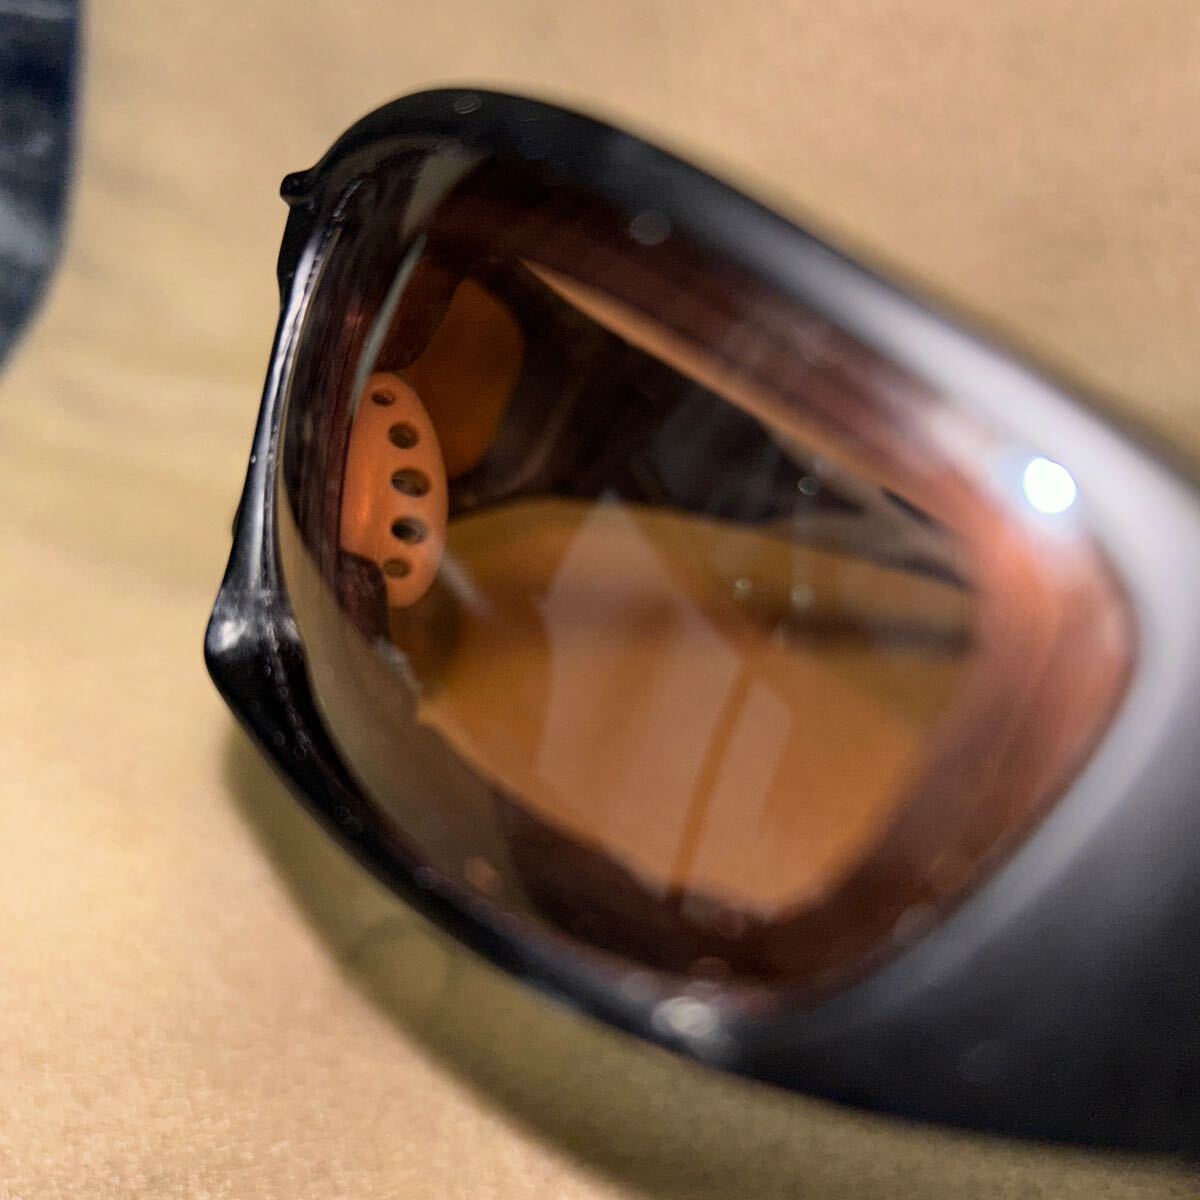  товар в хорошем состоянии  ...(SWANS) XC－002  спорт  солнцезащитные очки   черный 